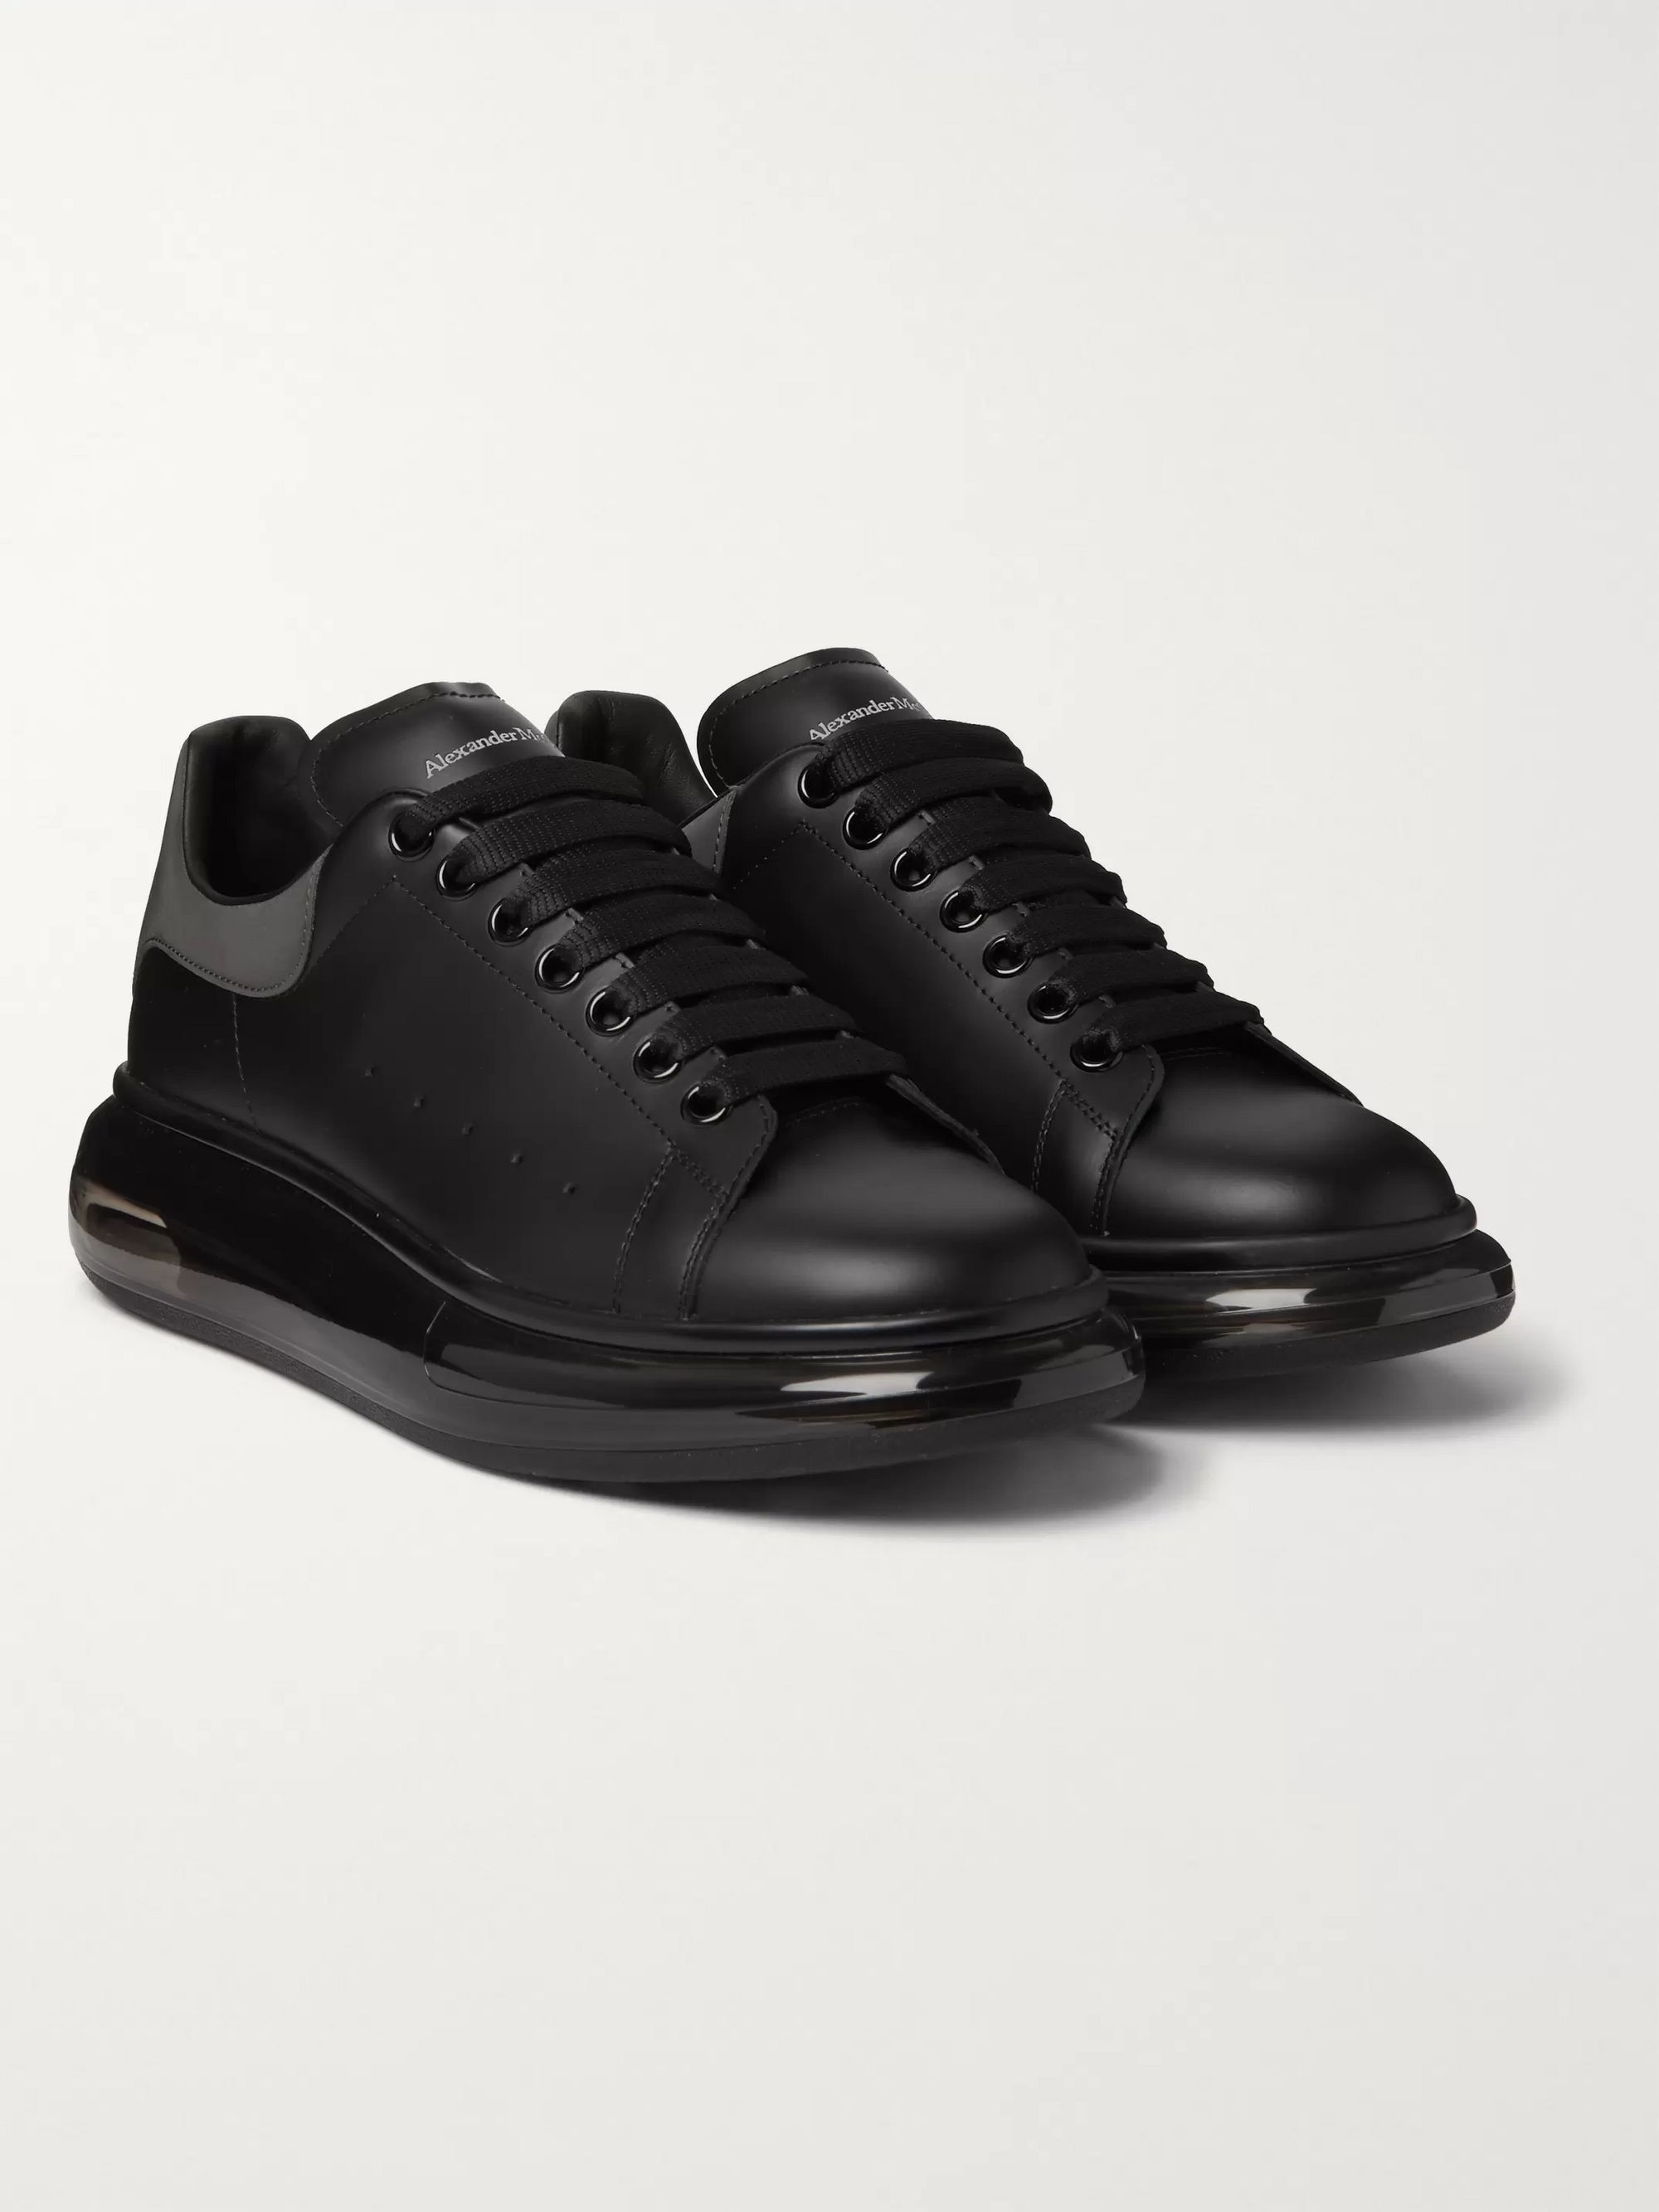 black alexander mcqueen shoes